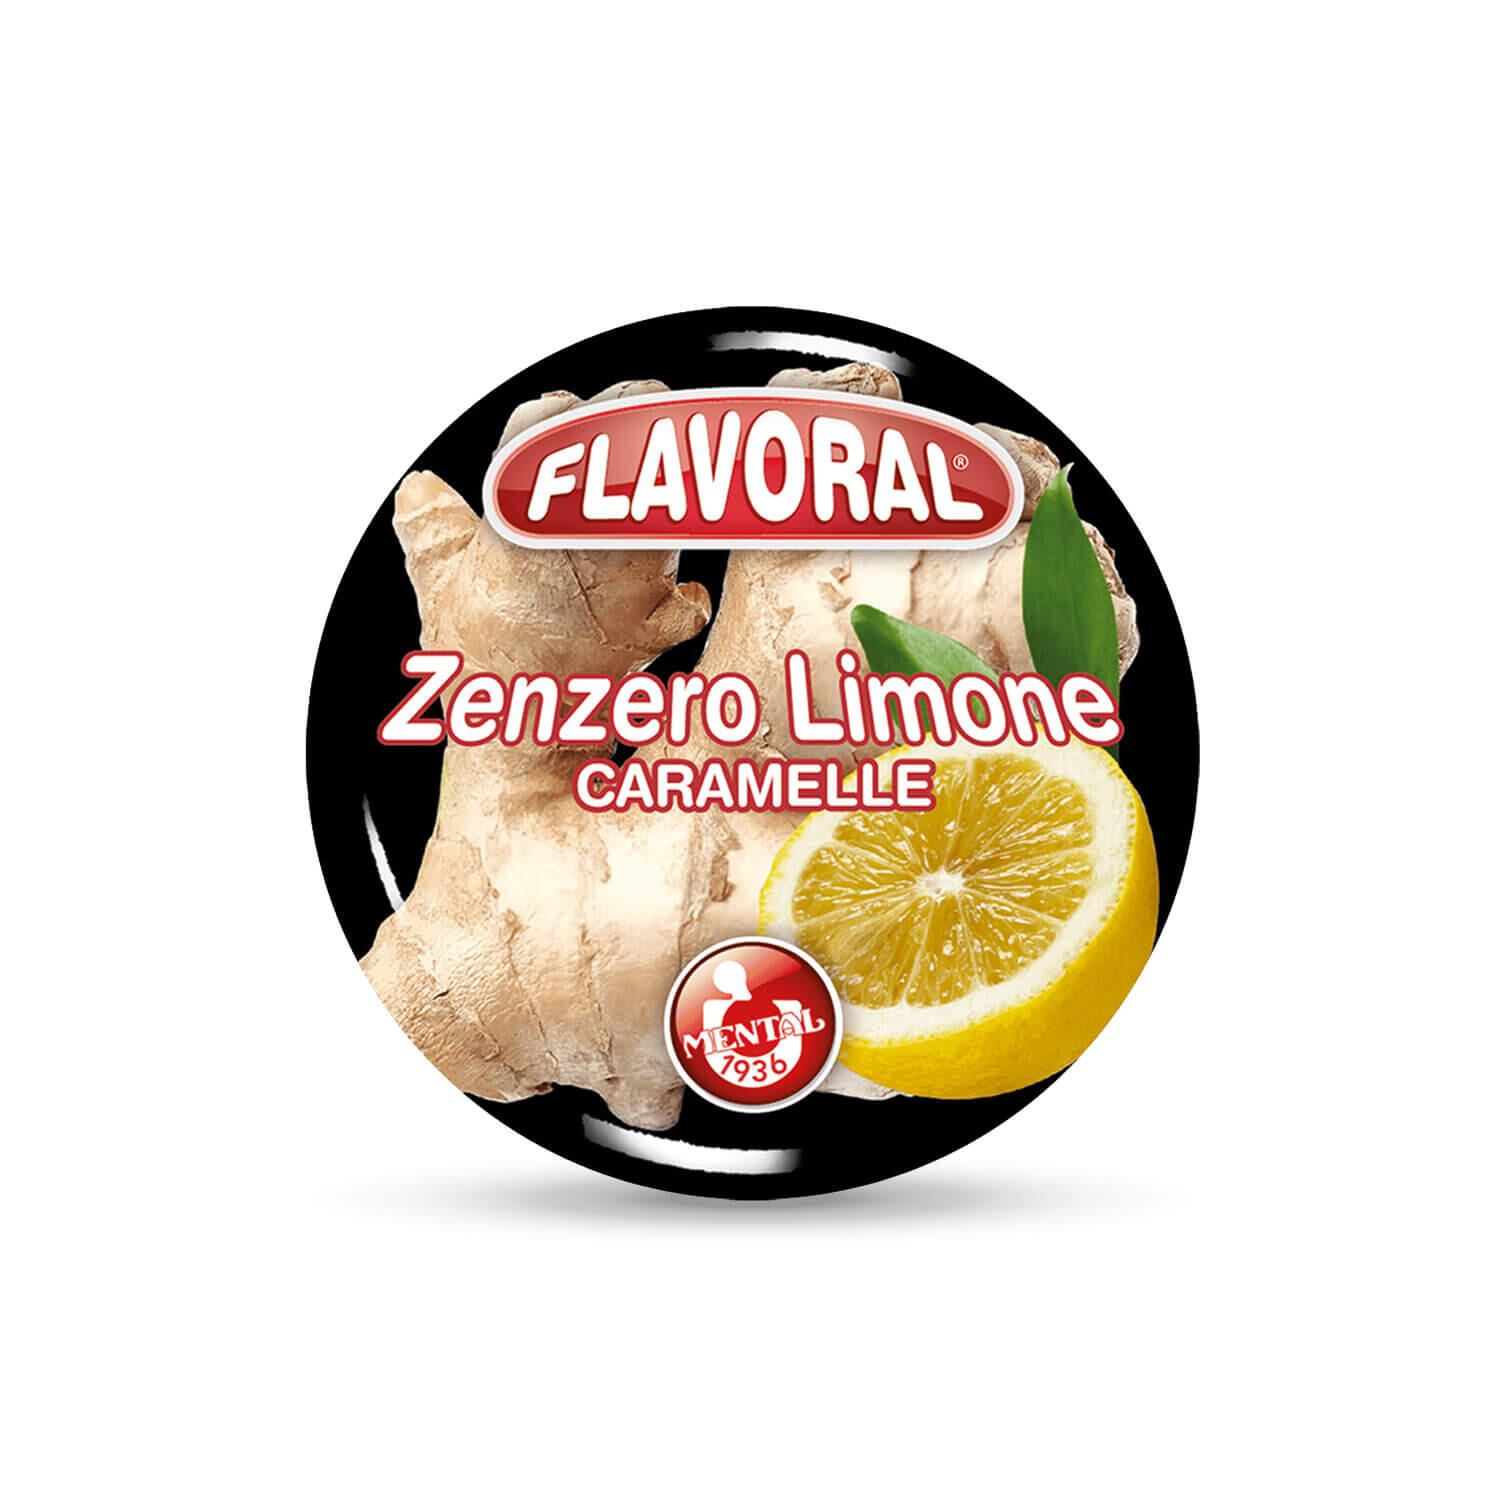 Flavoral Zenzero Limone - Pacchetto Singolo - Flavoral